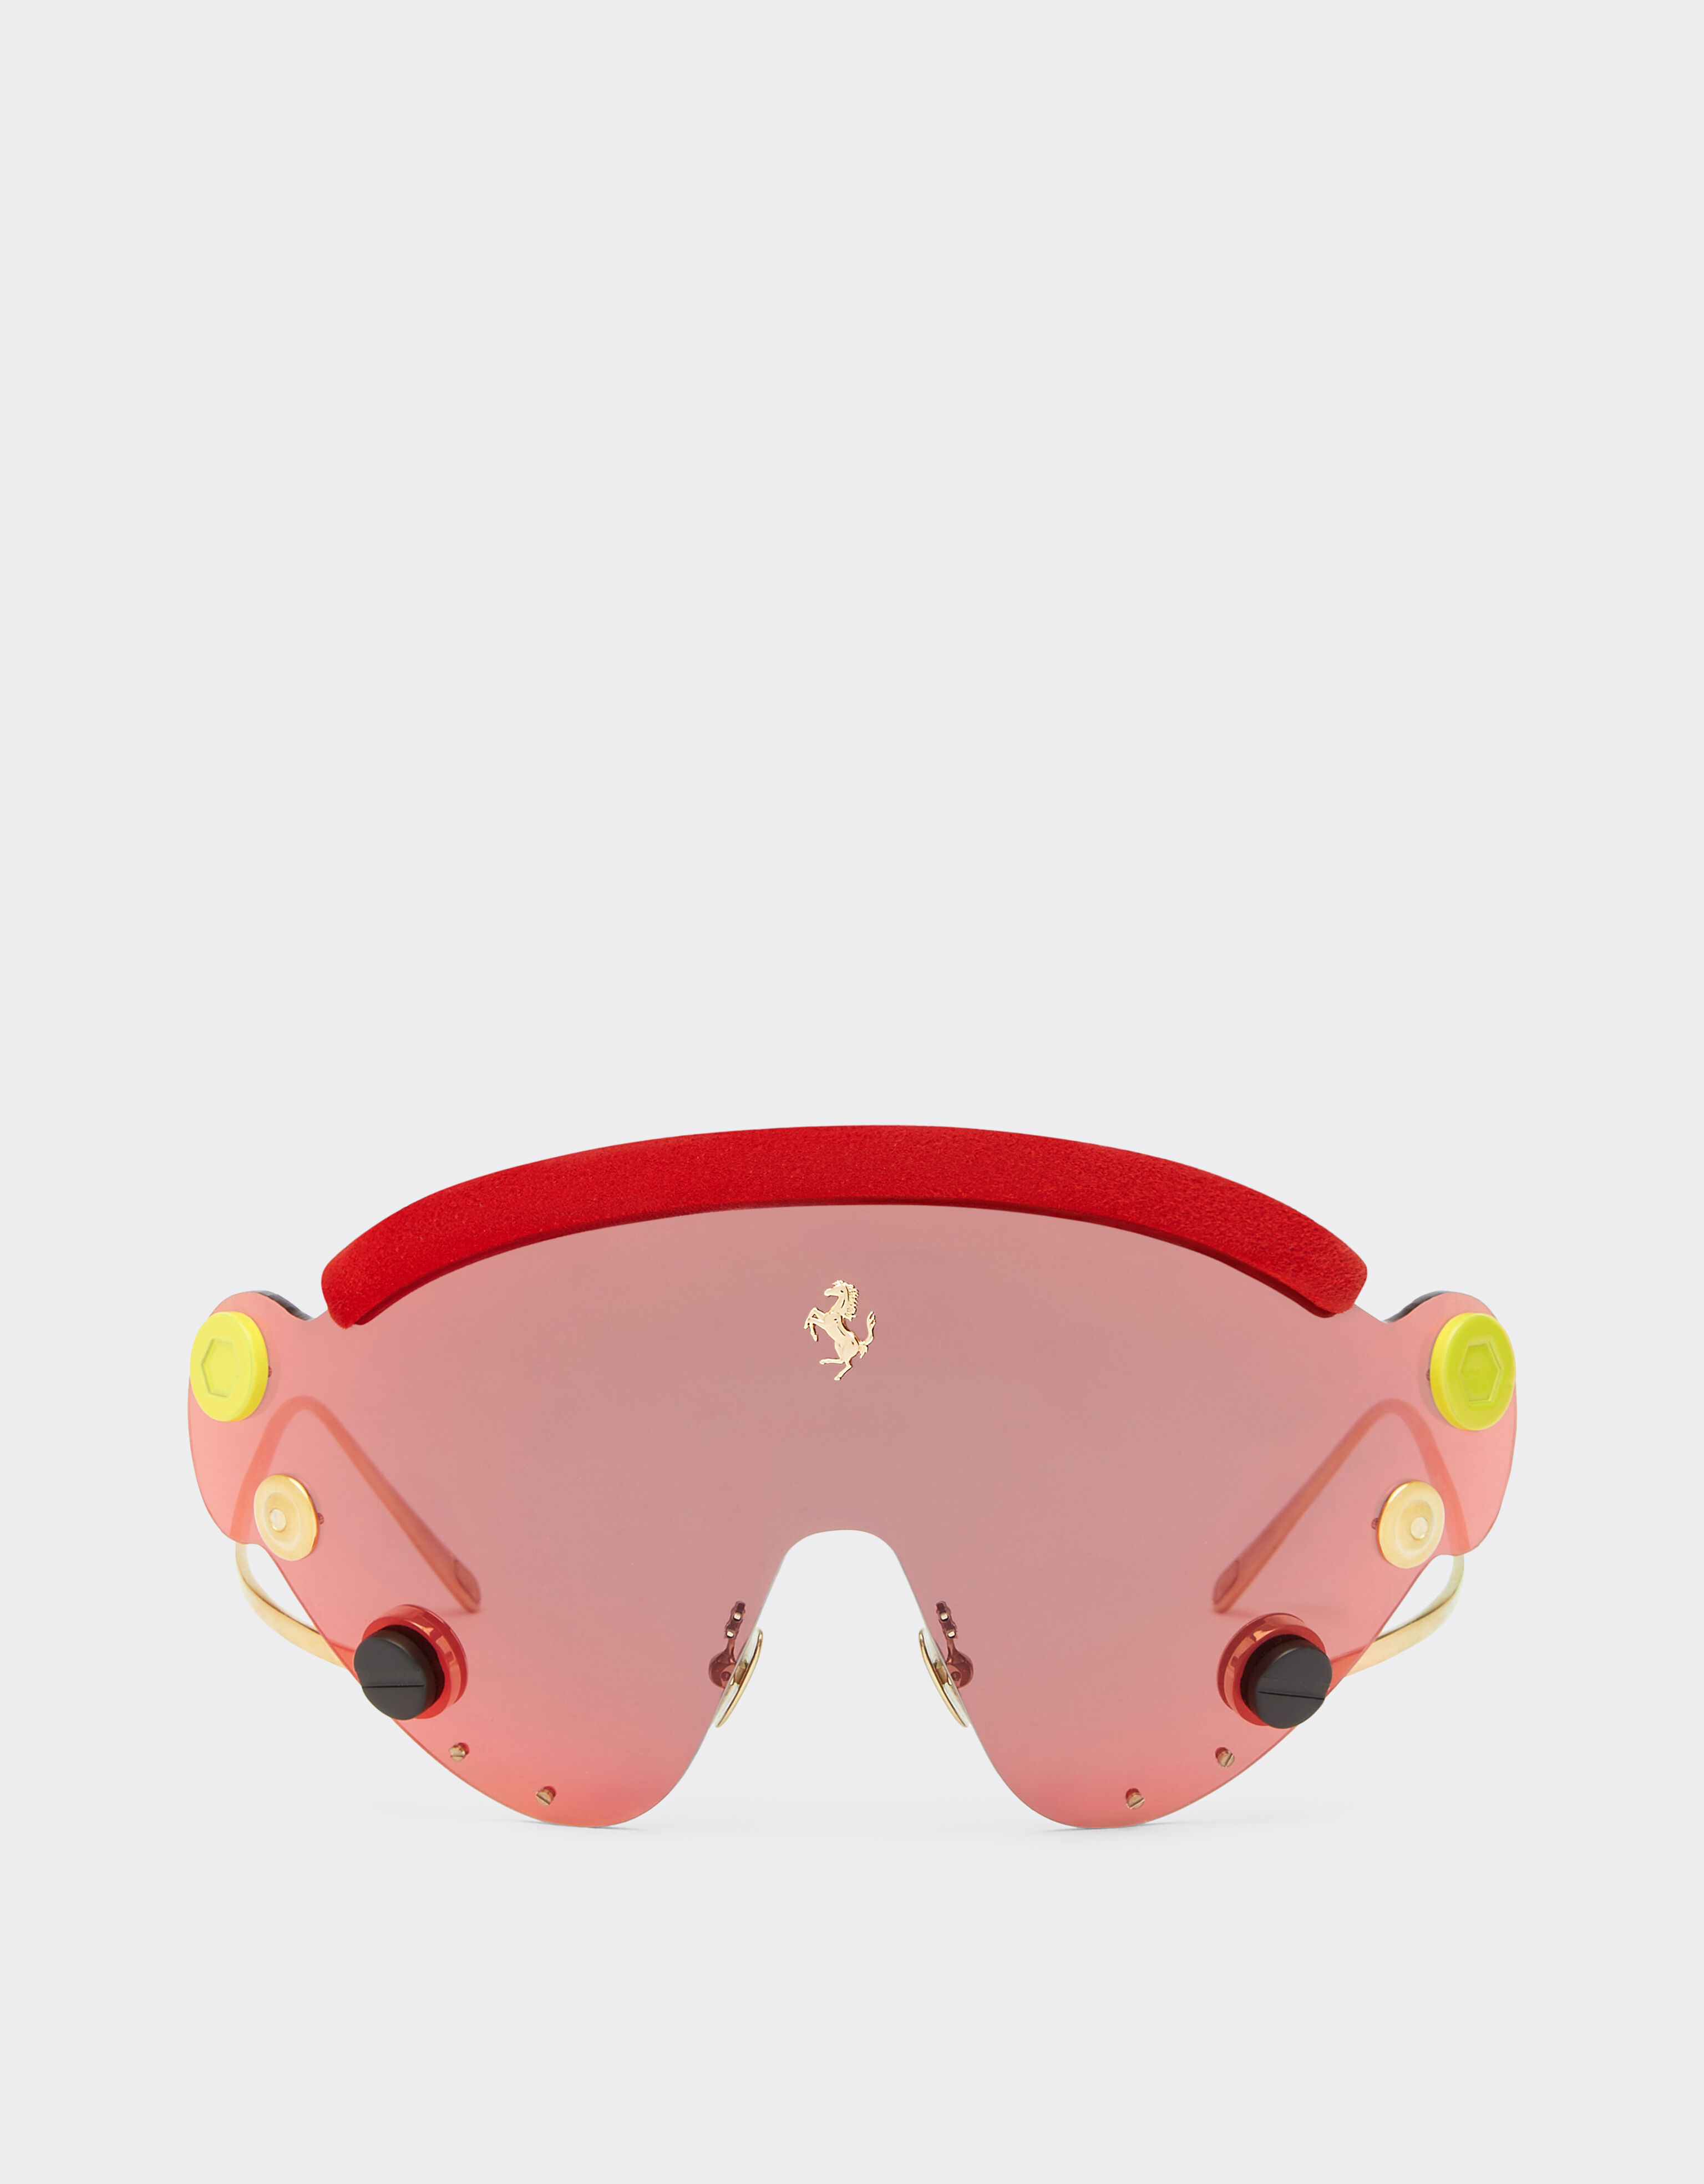 Ferrari Ferrari Limited Edition Sonnenbrille aus rotem und goldfarbenem Metall mit rot verspiegeltem Shield Rot F1243f